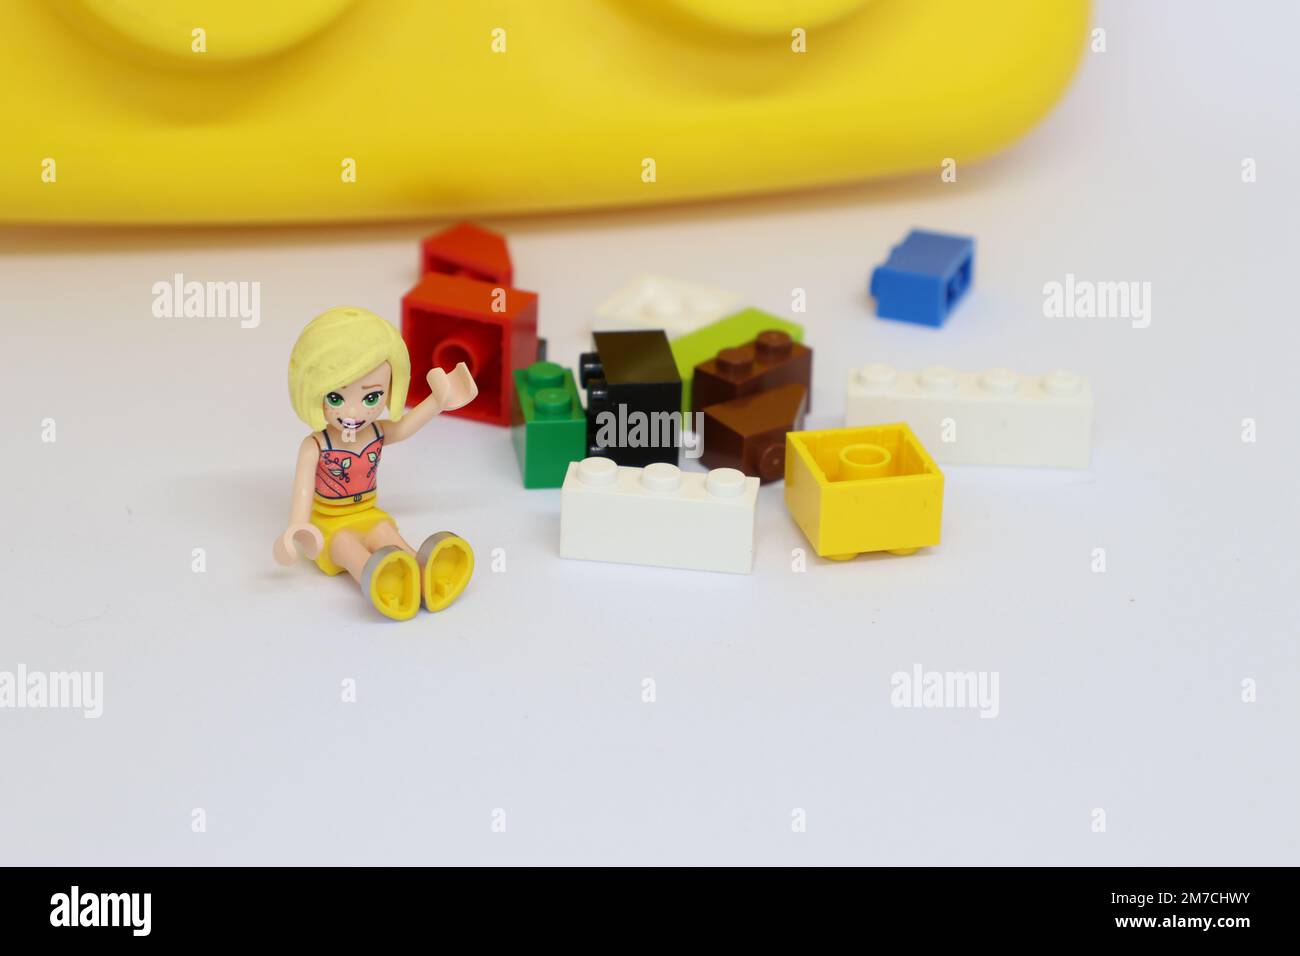 Una ragazza con i capelli biondi sta ondolando. È seduta accanto ai blocchi di lego sparsi e un blocco di lego gigante sullo sfondo. Foto Stock